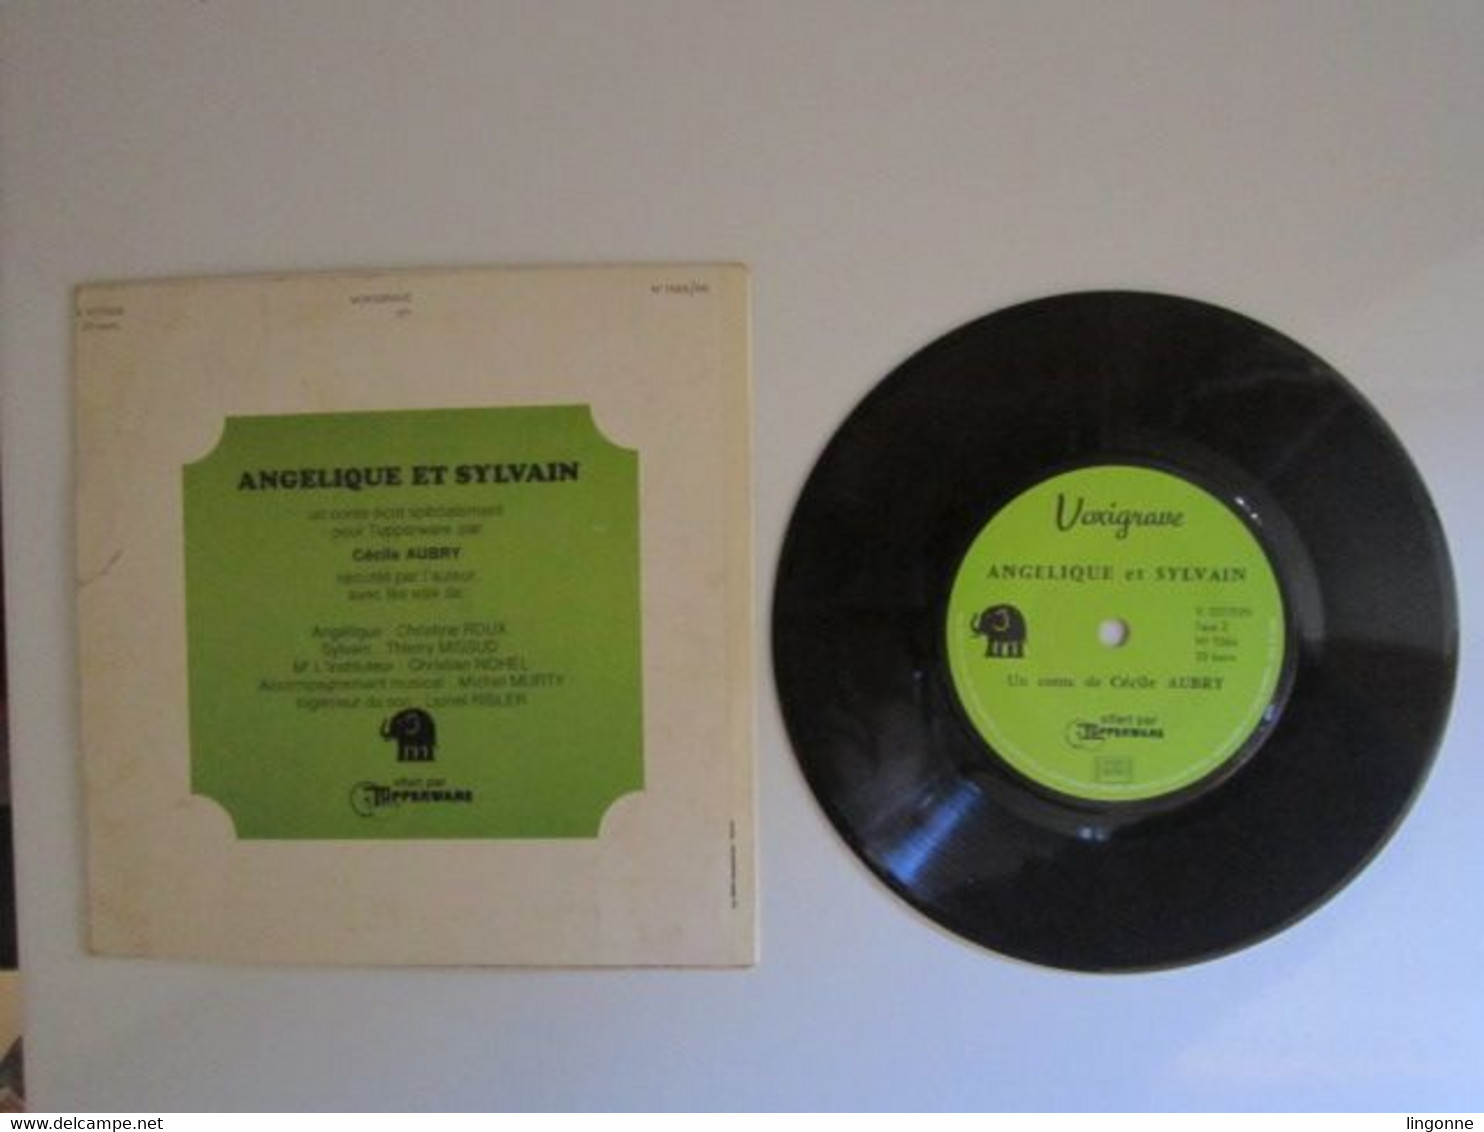 1971 Vinyle 45 Tours LIVRE DISQUE DE CECILE AUBRY " ANGELIQUE ET SYLVAIN " OFFERT PAR TUPPERWARE - Bambini